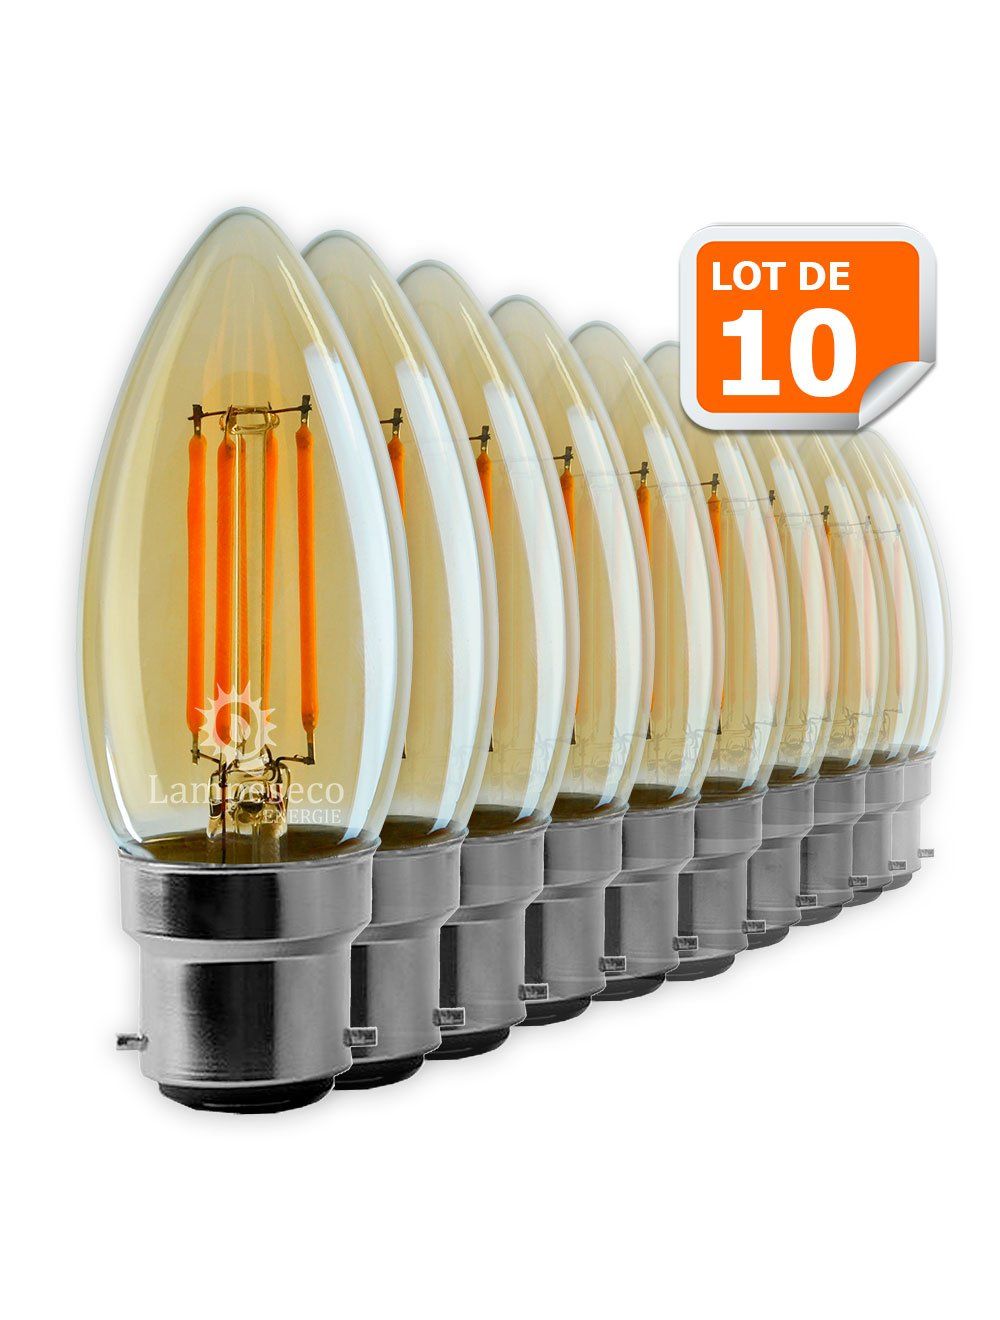 Lot de 10 Ampoules Led Flamme Filament Doré 4 watt (éq. 42 Watt) Culot B22